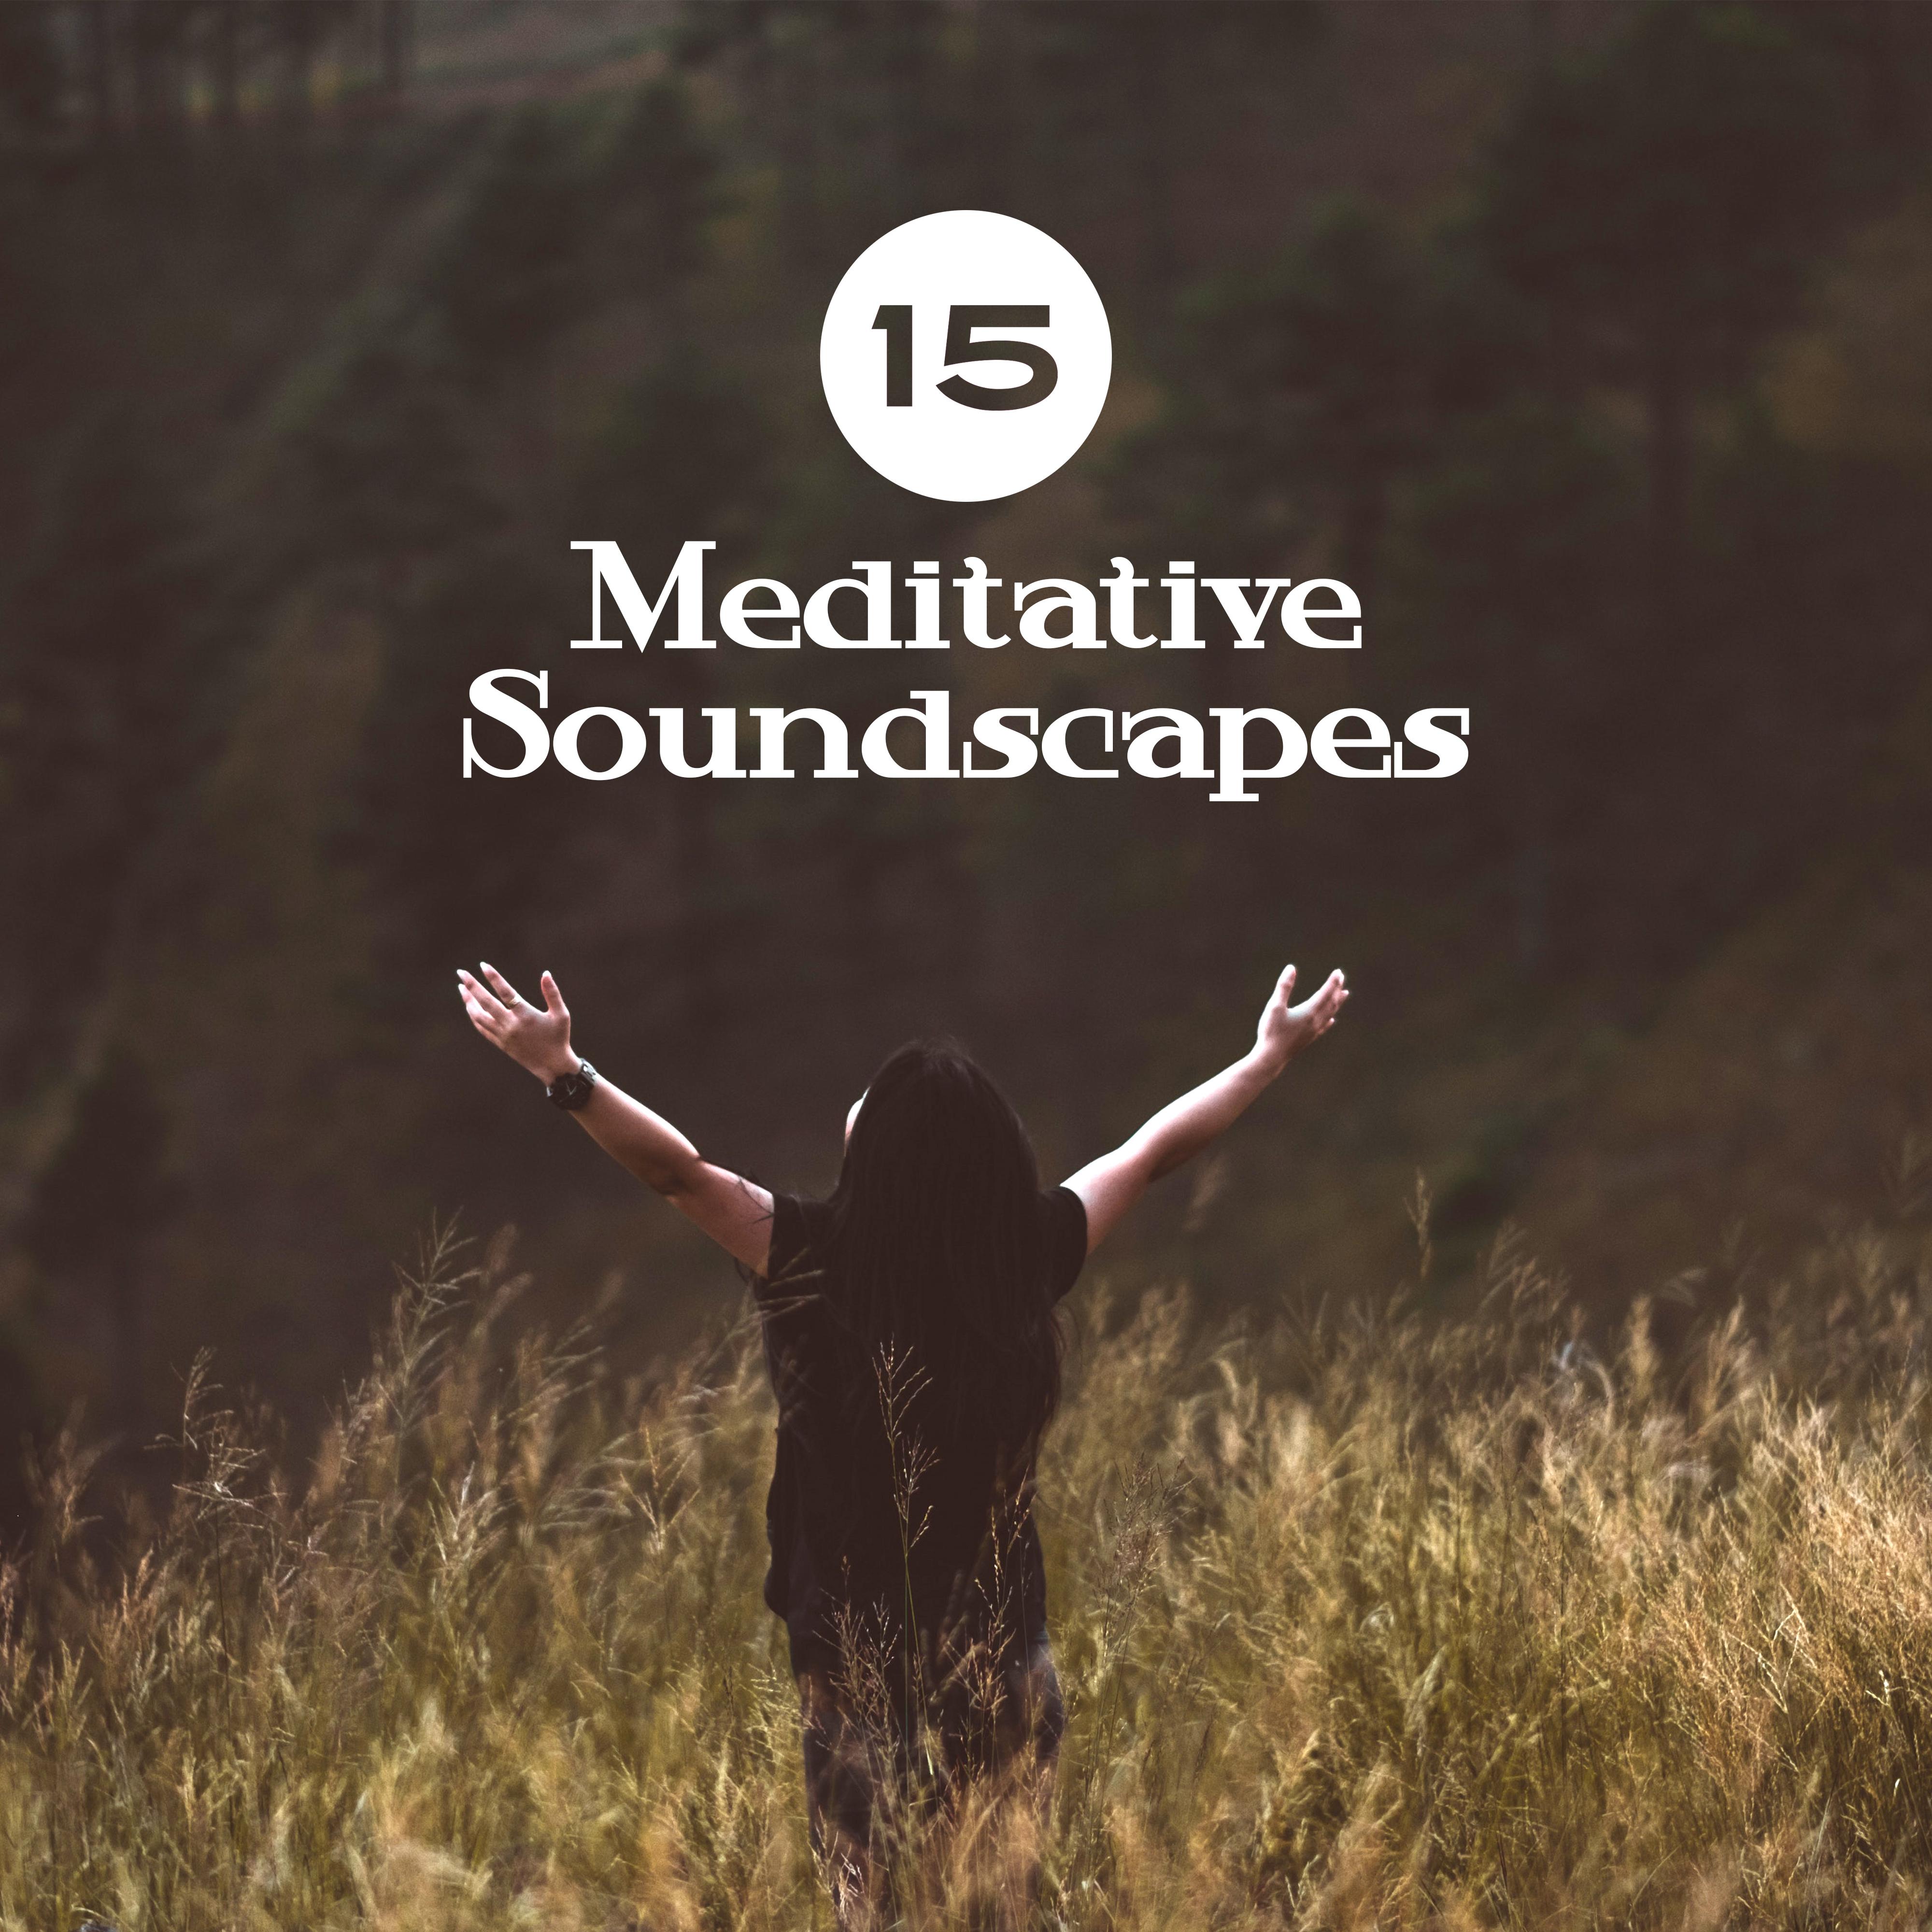 15 Meditative Soundscapes